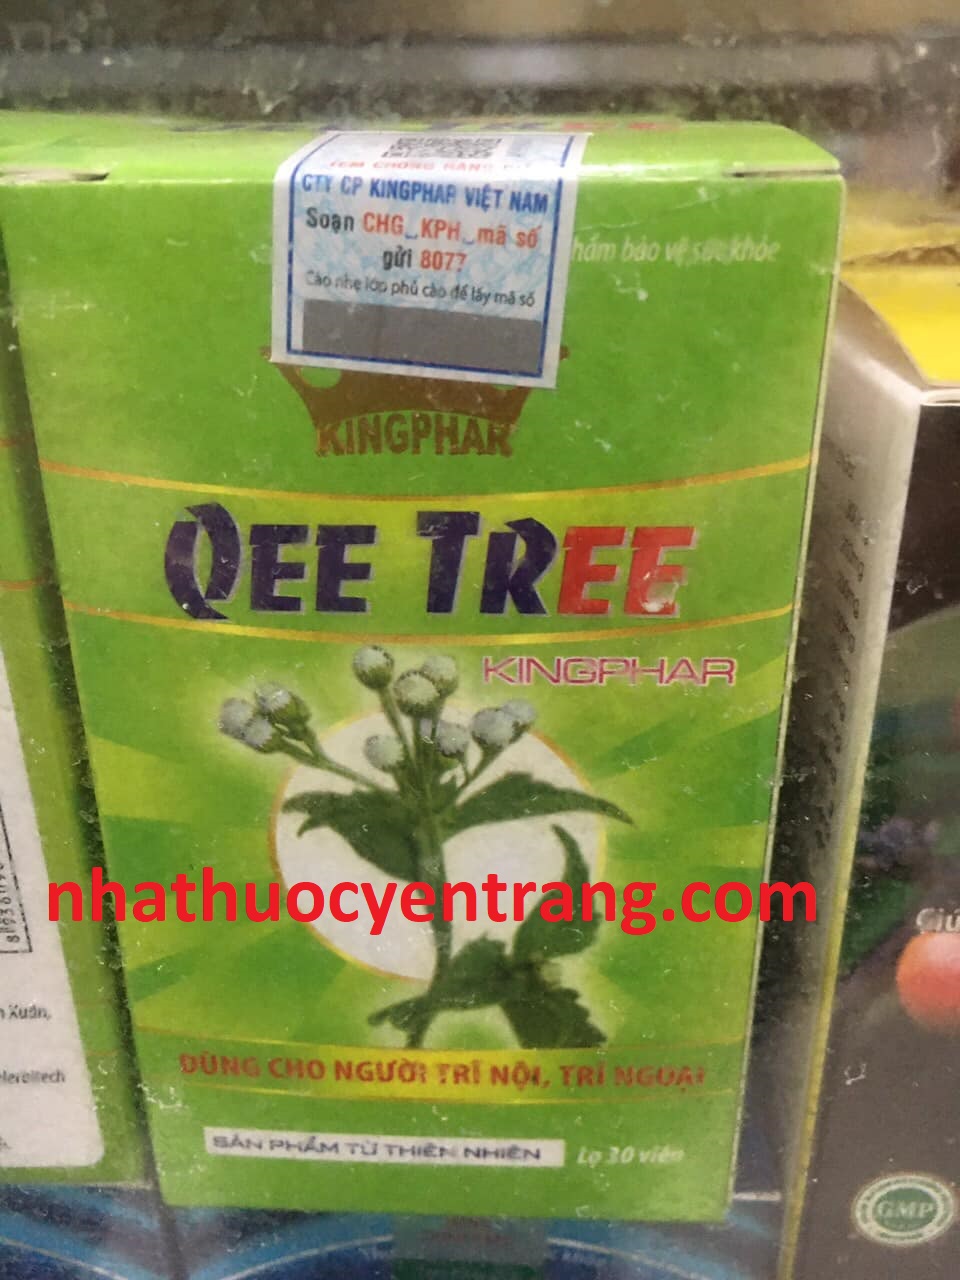 Qee Tree